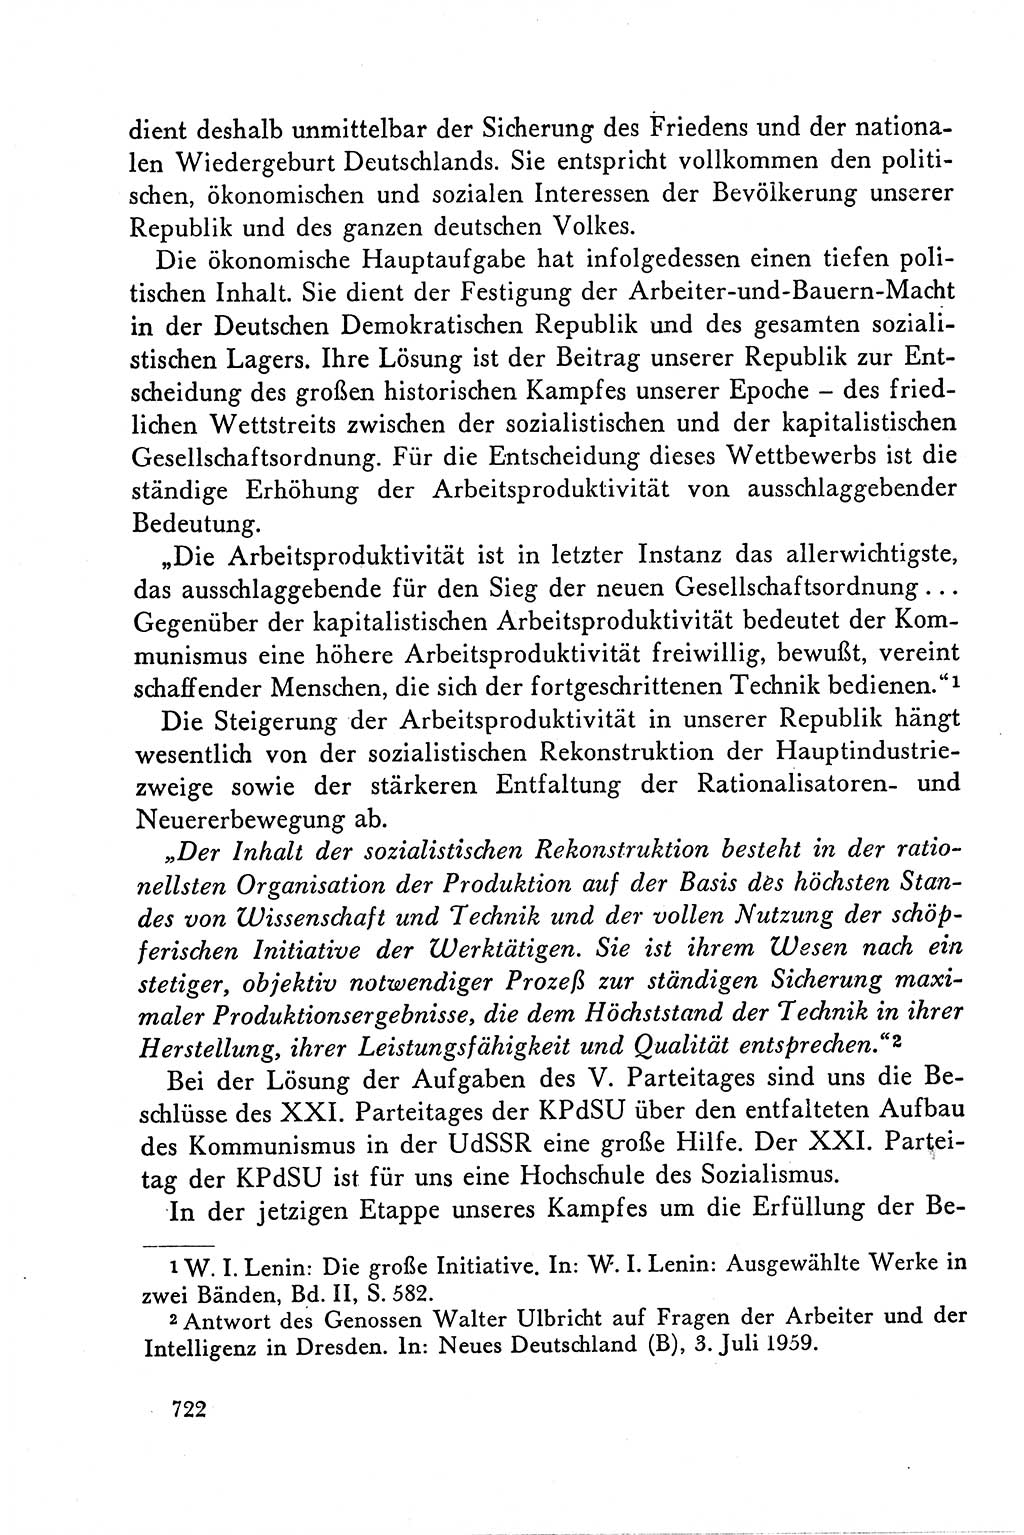 Dokumente der Sozialistischen Einheitspartei Deutschlands (SED) [Deutsche Demokratische Republik (DDR)] 1958-1959, Seite 722 (Dok. SED DDR 1958-1959, S. 722)